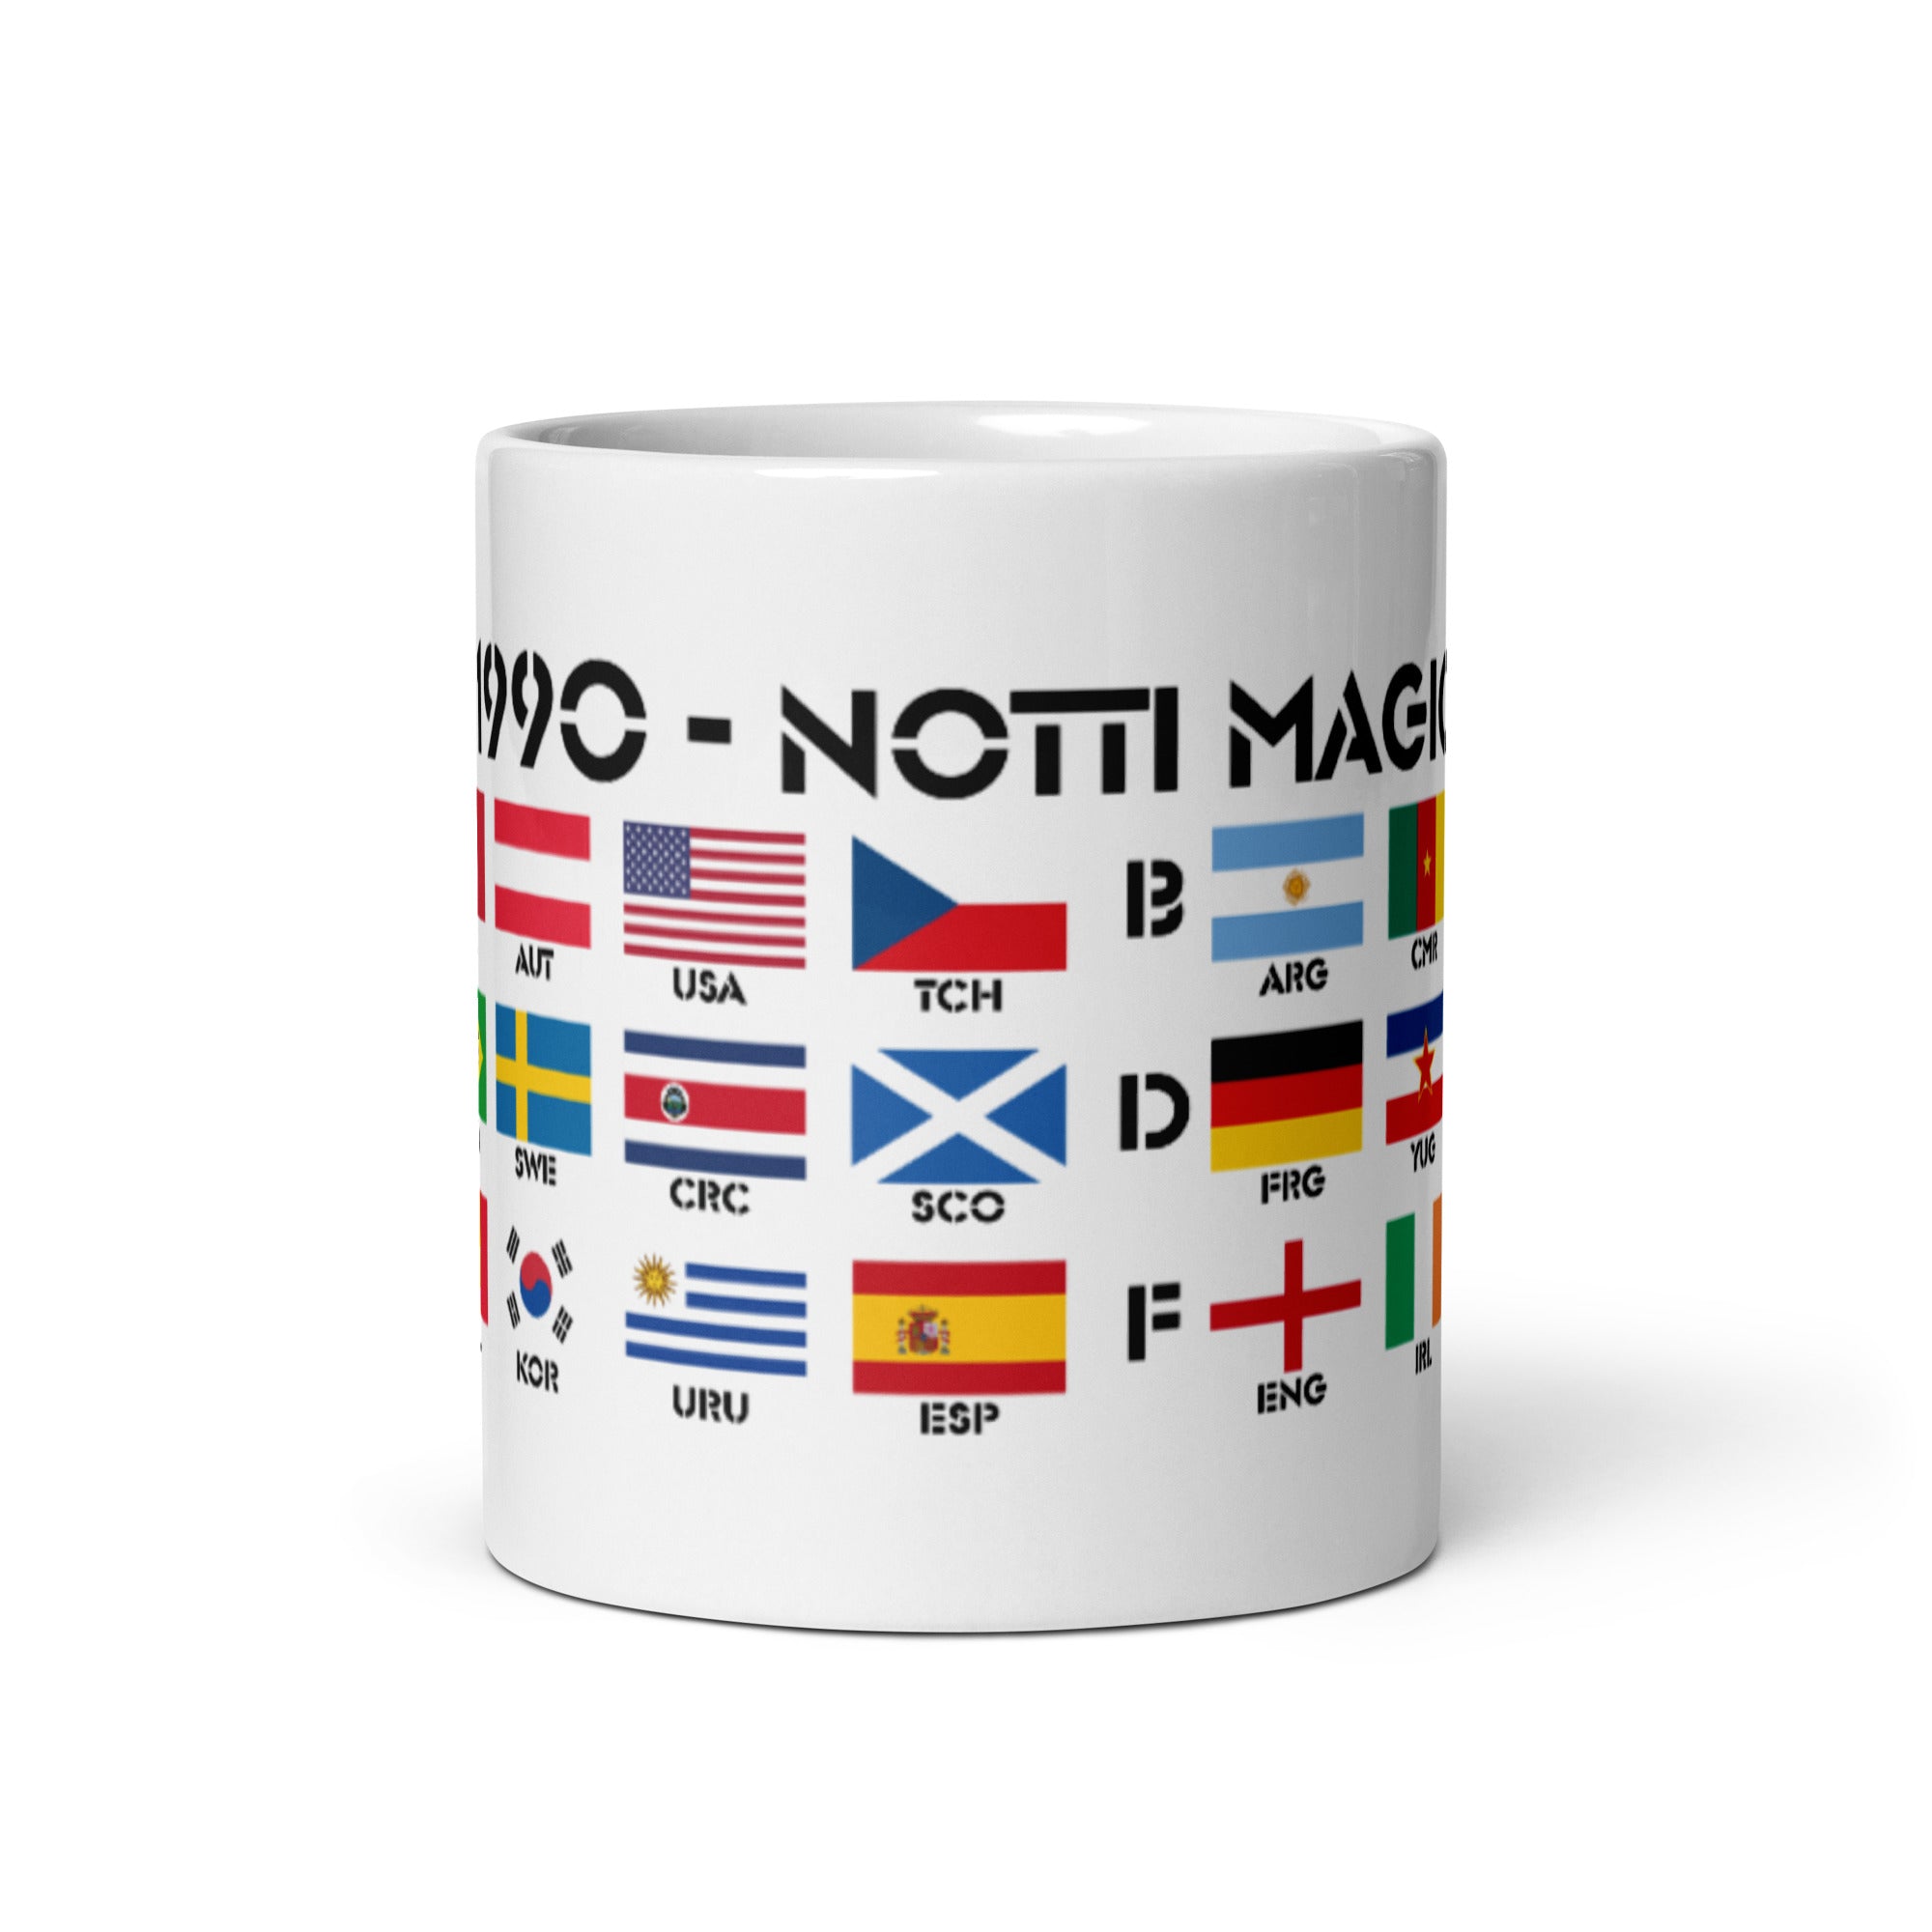 FIFA World Cup Italia 1990 Mug - NOTTI MAGICHE